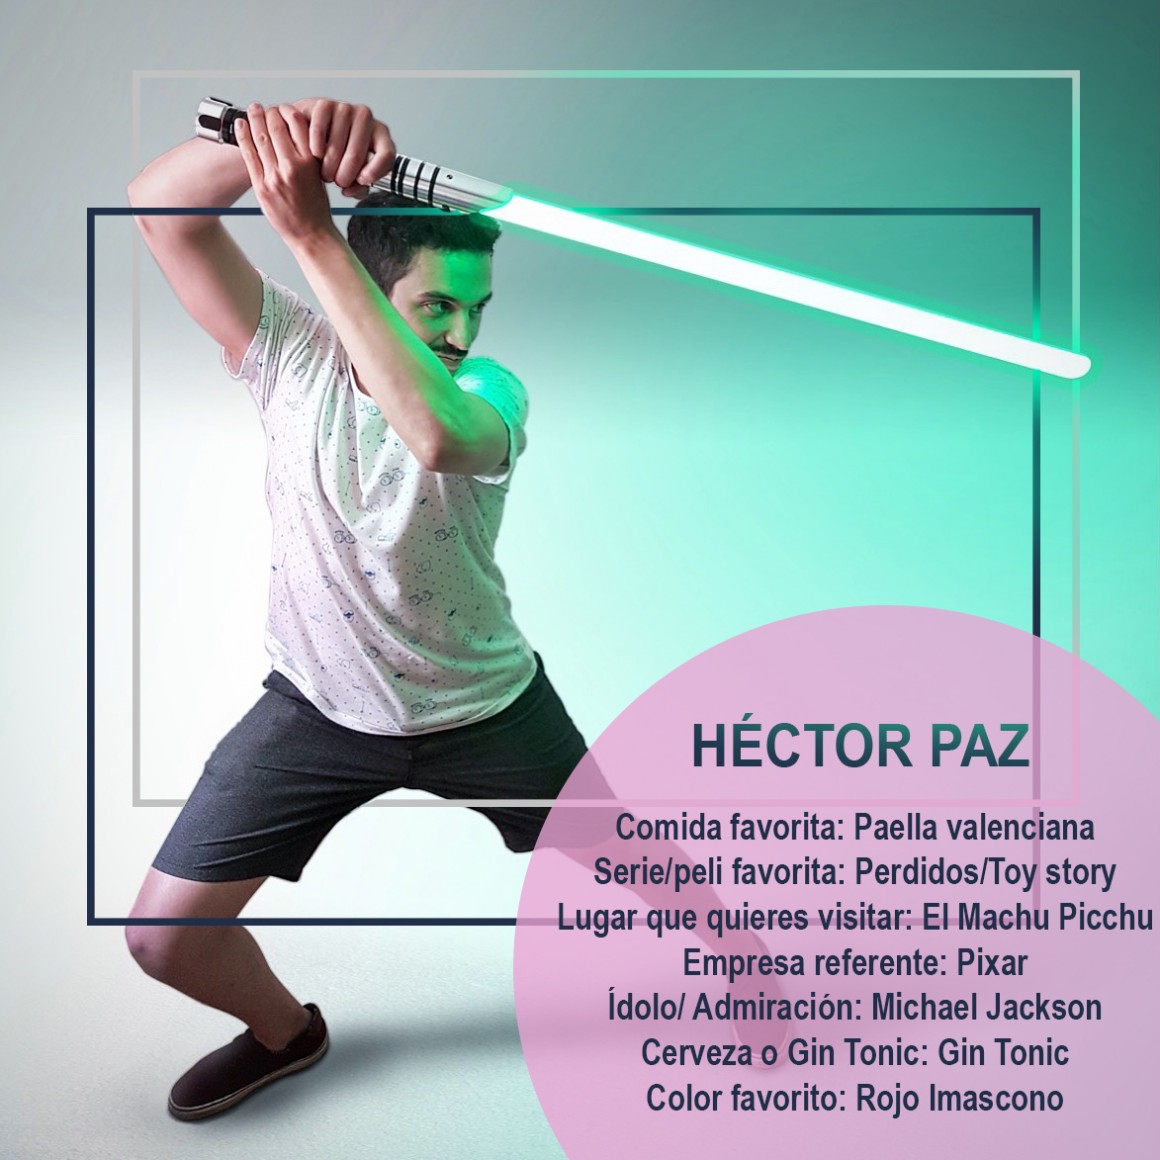 Hectorpaz